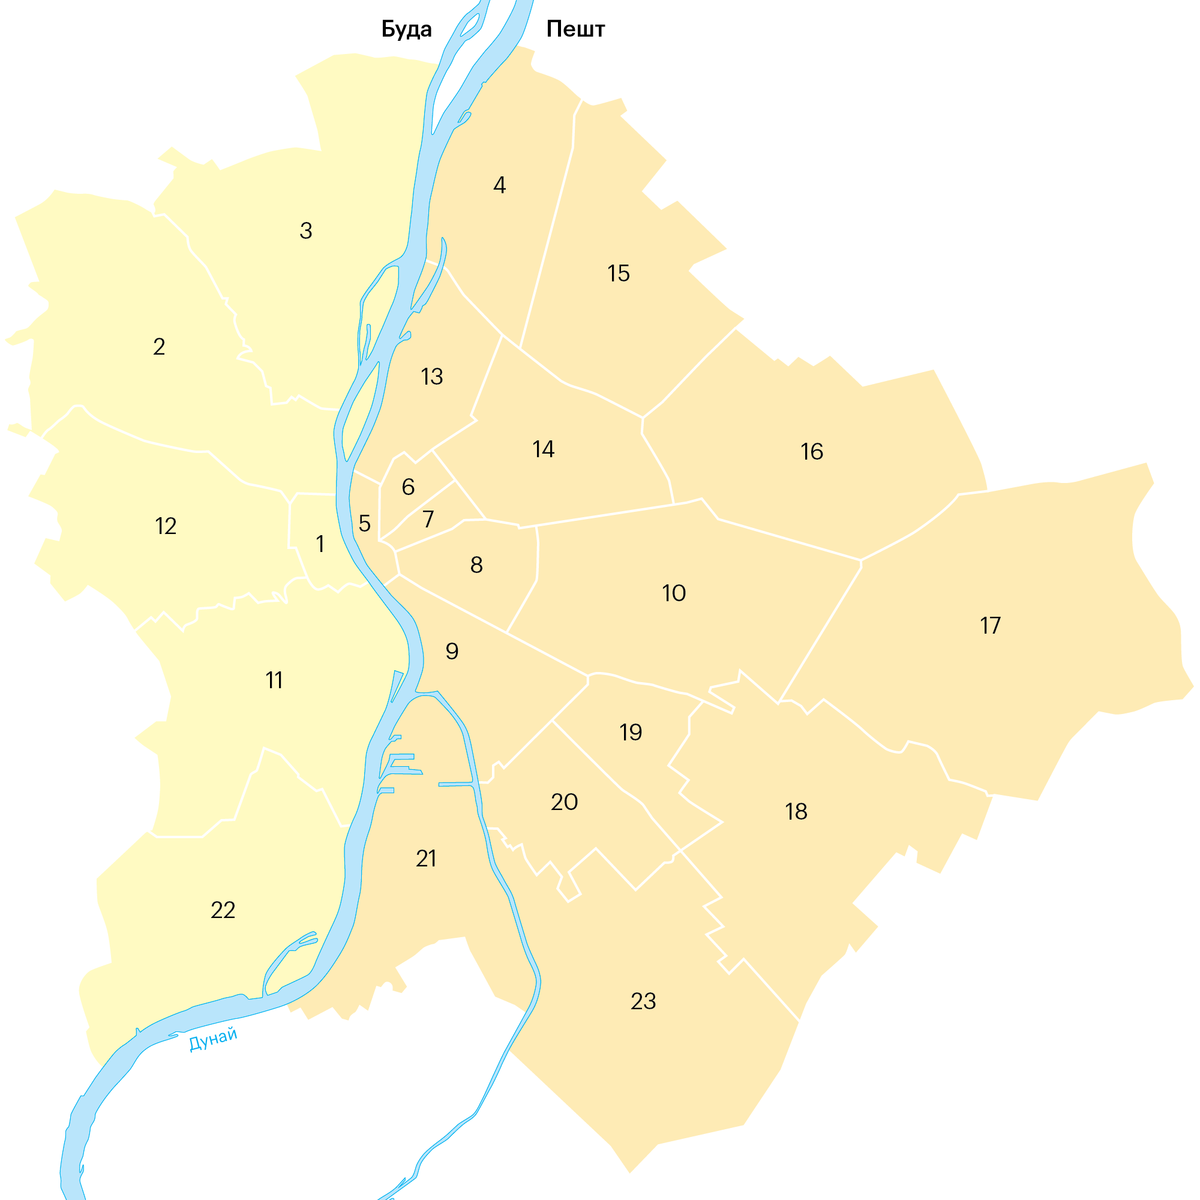 Будапешт состоит из двух частей, которые разделяет река Дунай, — Буда и Пешт. Они делятся на 23 района. Чем дальше вглубь Буды, тем спокойнее район. А чем ближе к Дунаю, тем улицы оживленнее